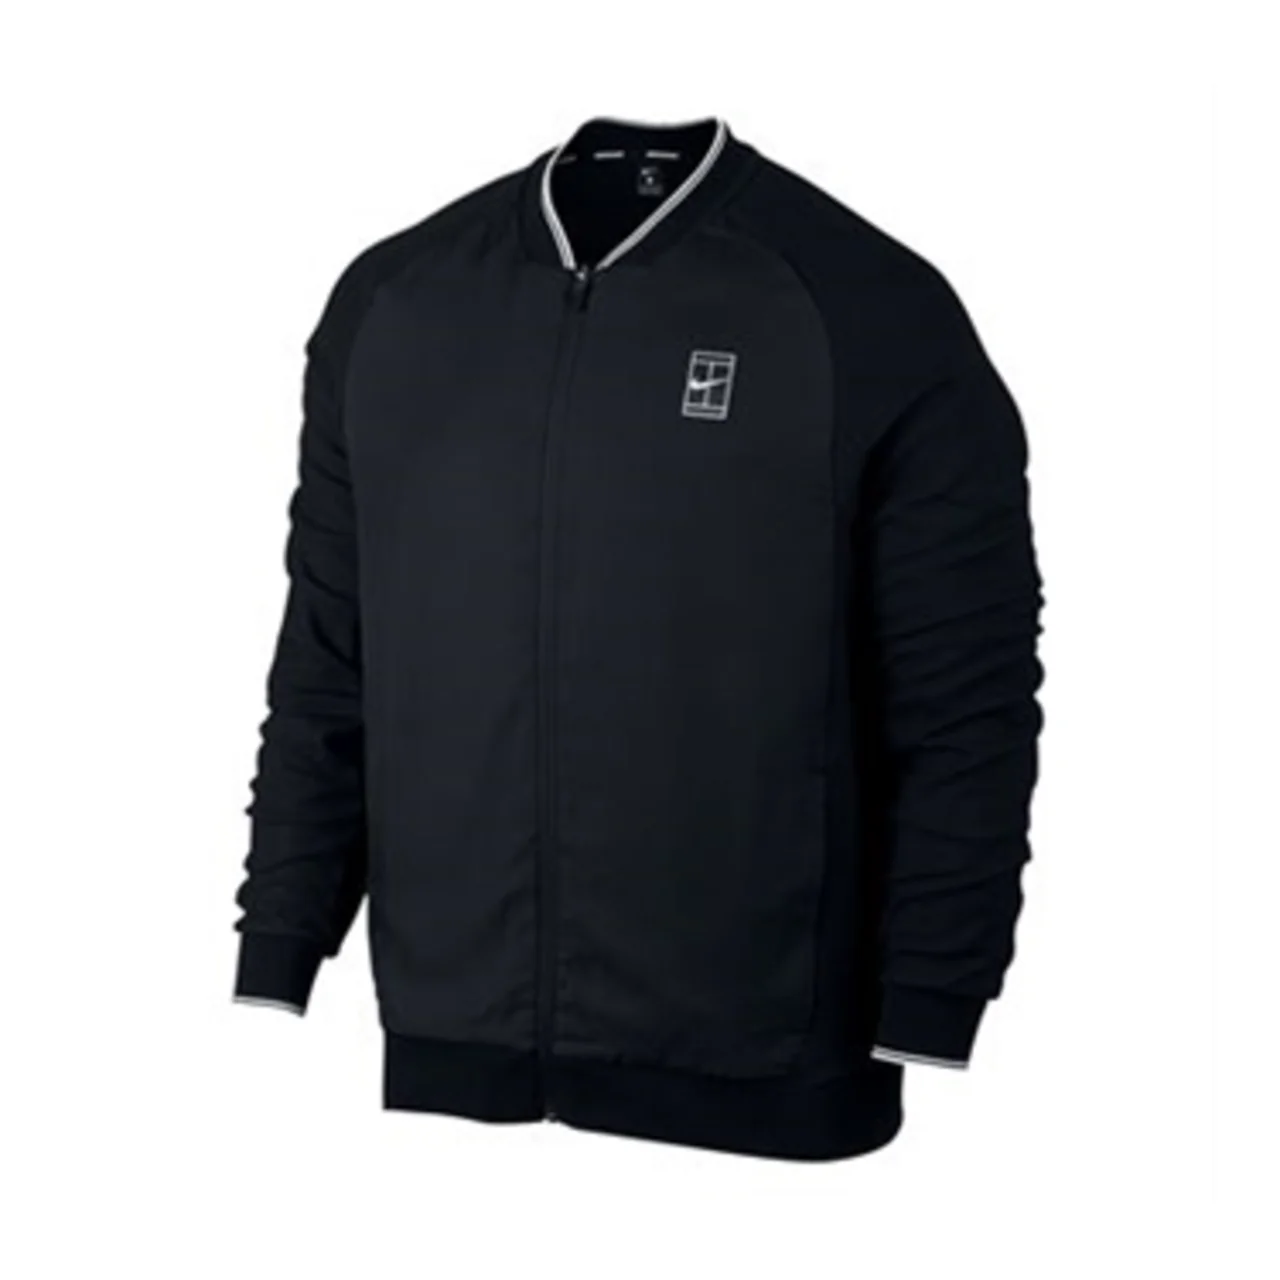 Nike Court Baseline Jacket Black Size S